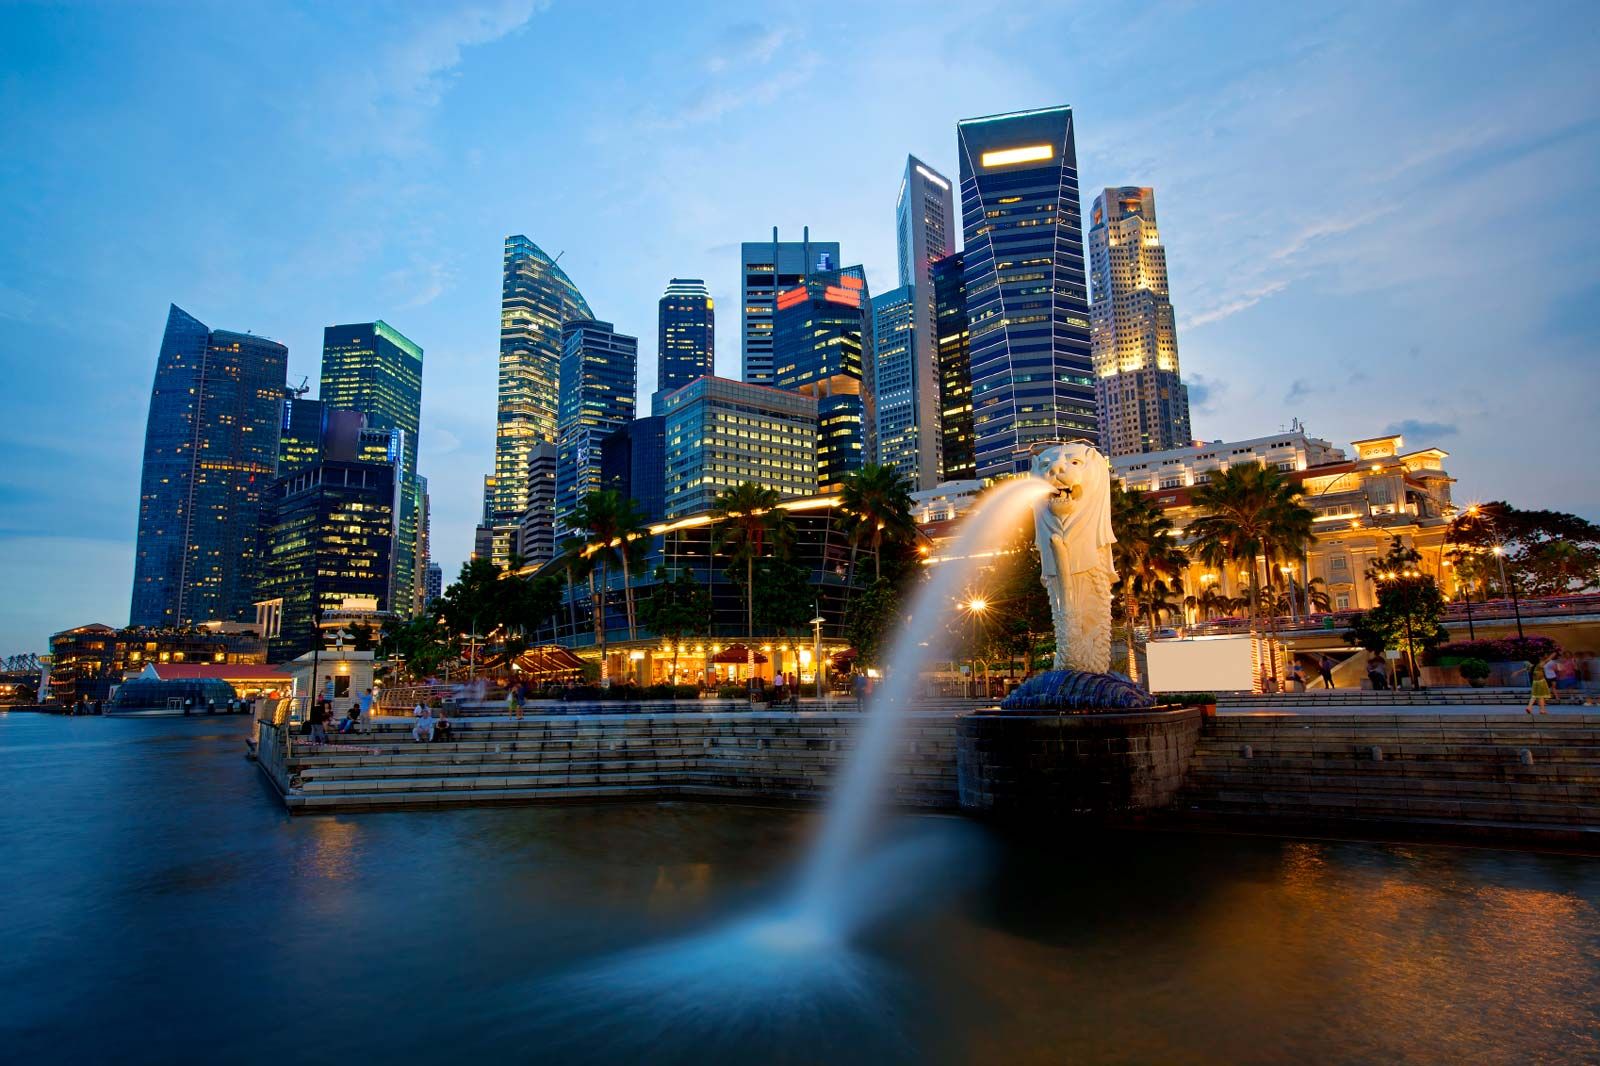 Singapura Ungkap Keterlibatan Menhub dan Miliarder dalam Kasus Dugaan Korupsi